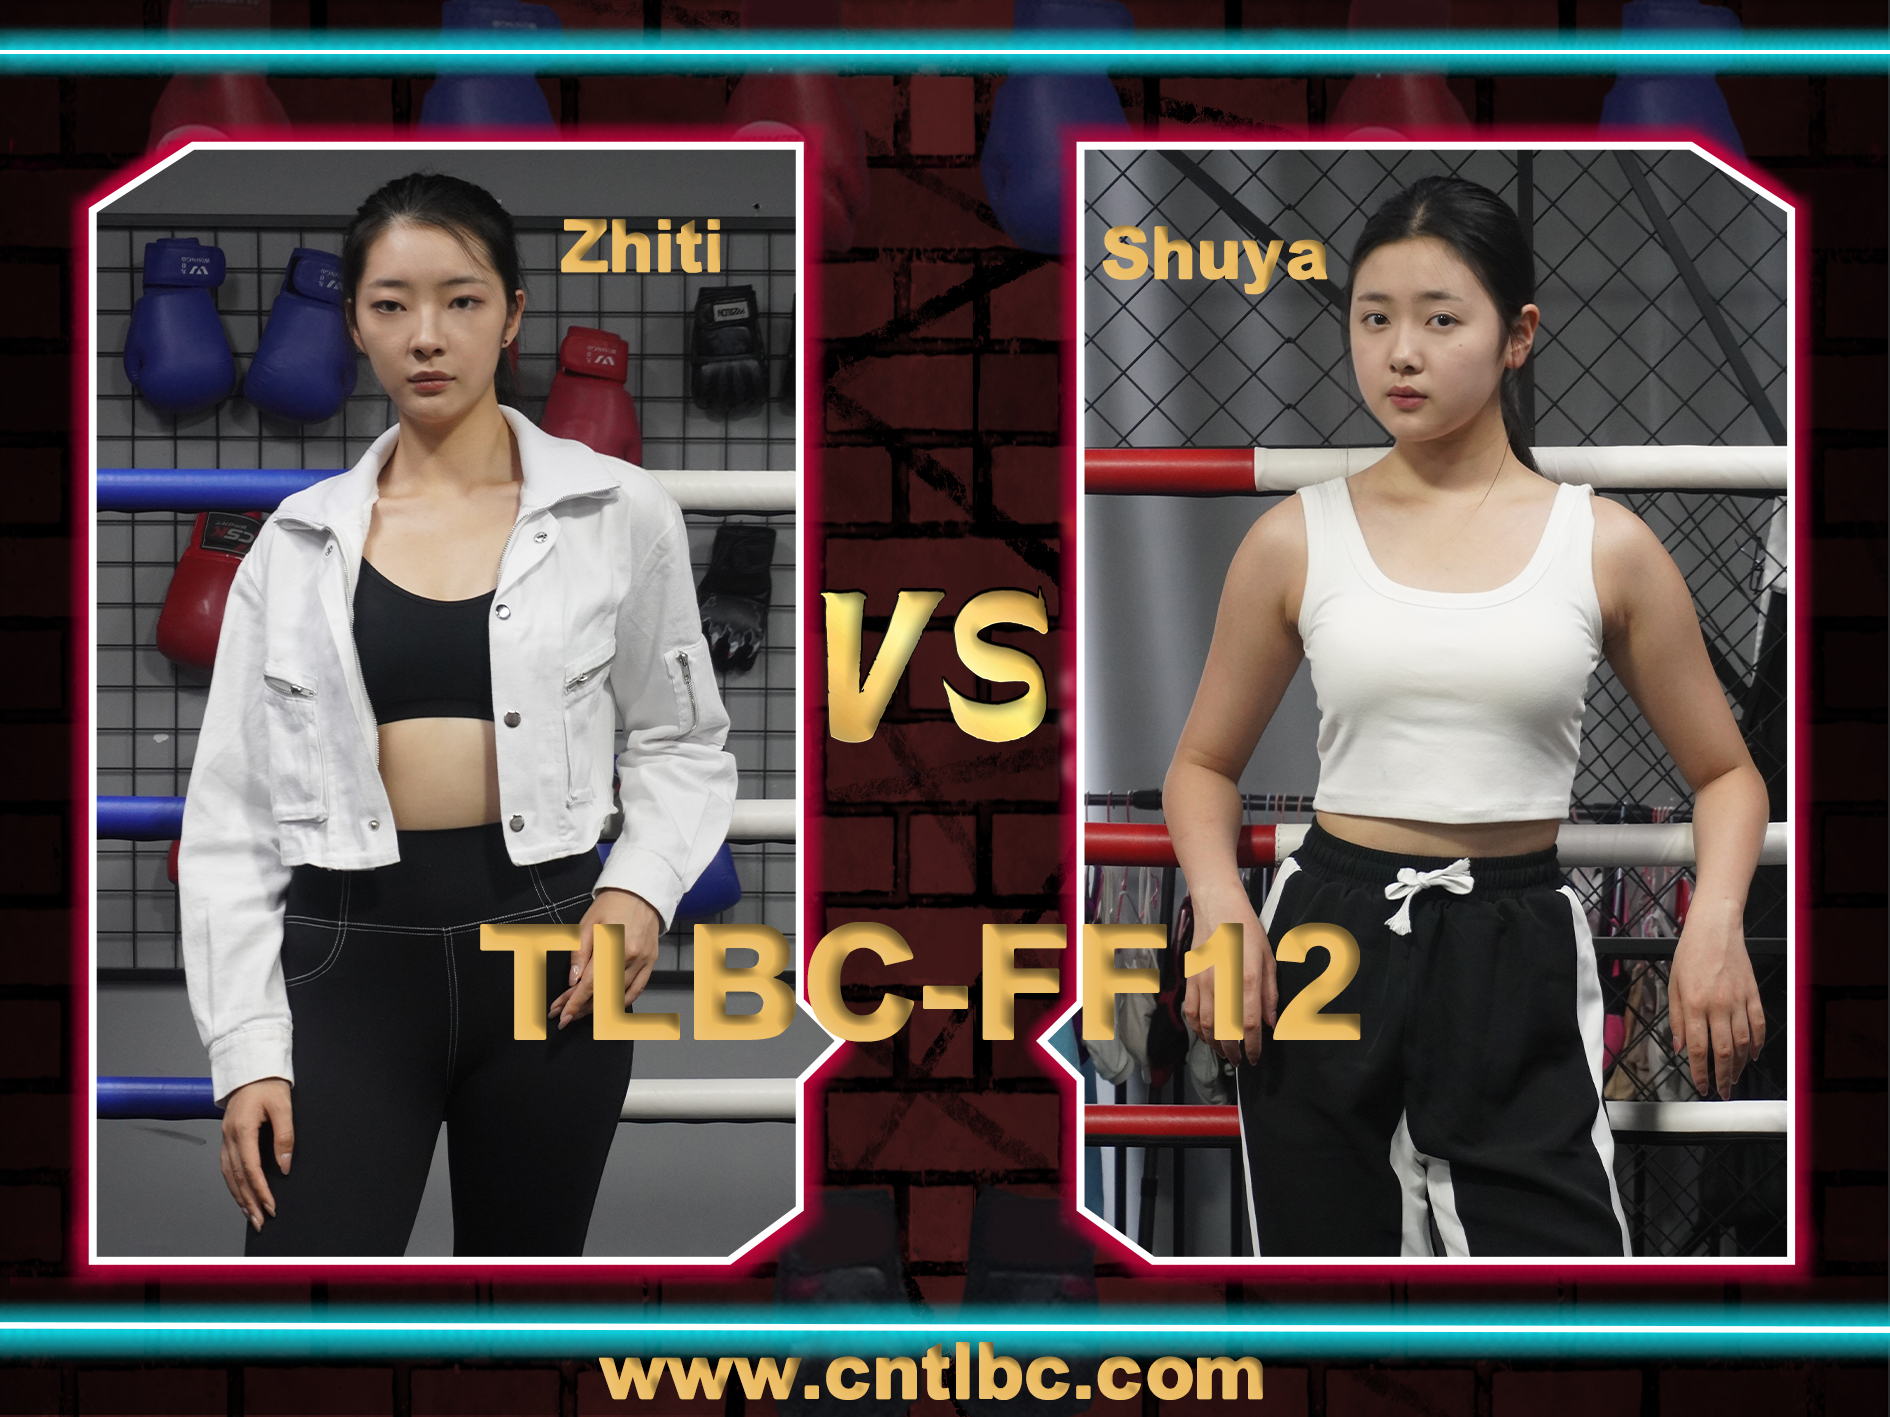 TLBC-FF12-Zhiti VS Shuya